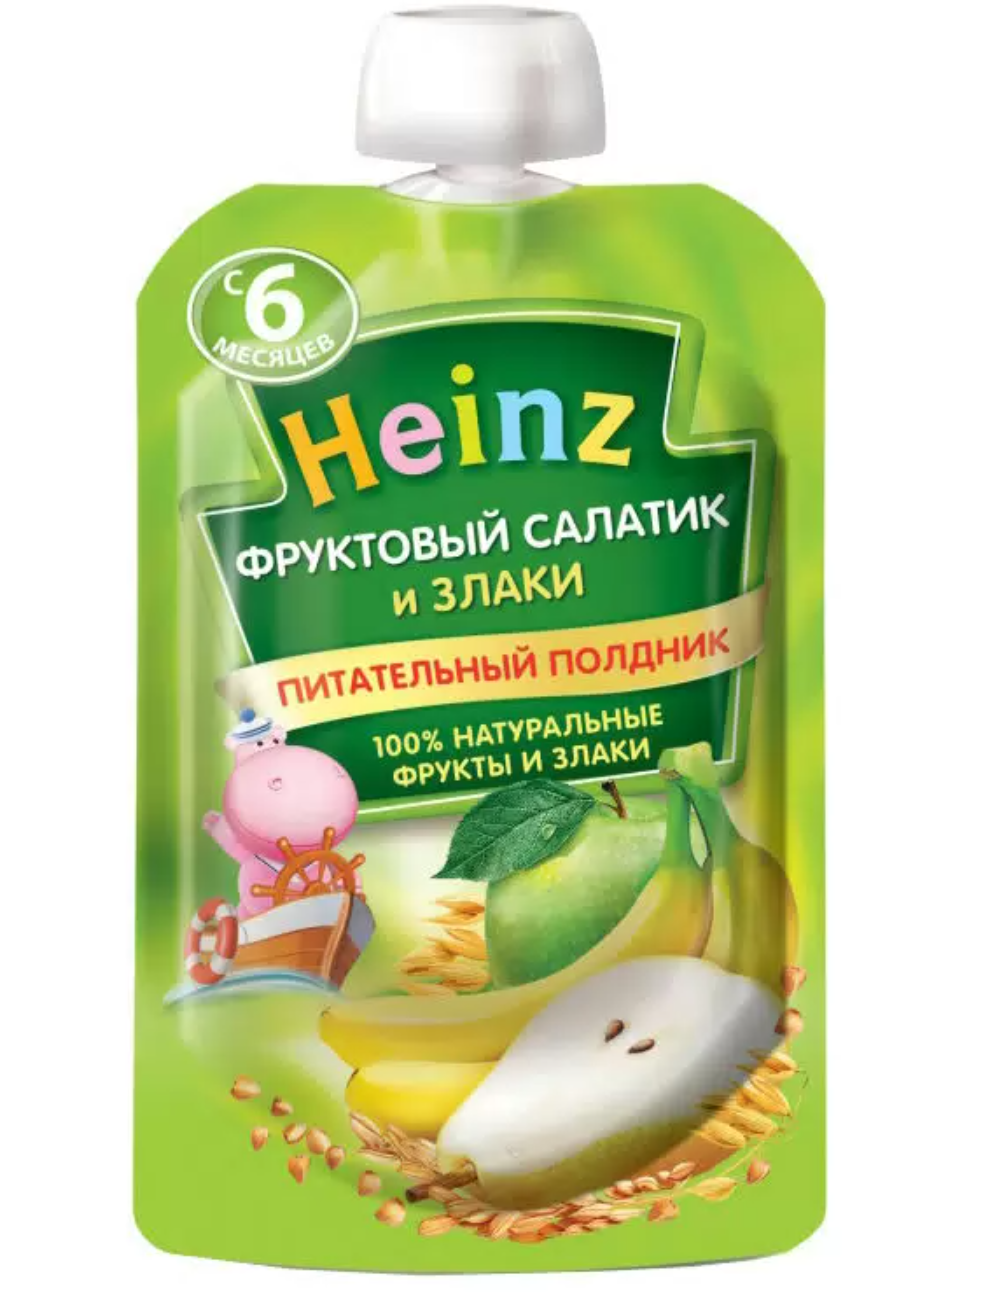 фото упаковки Heinz Пюре фруктовый салатик и злаки